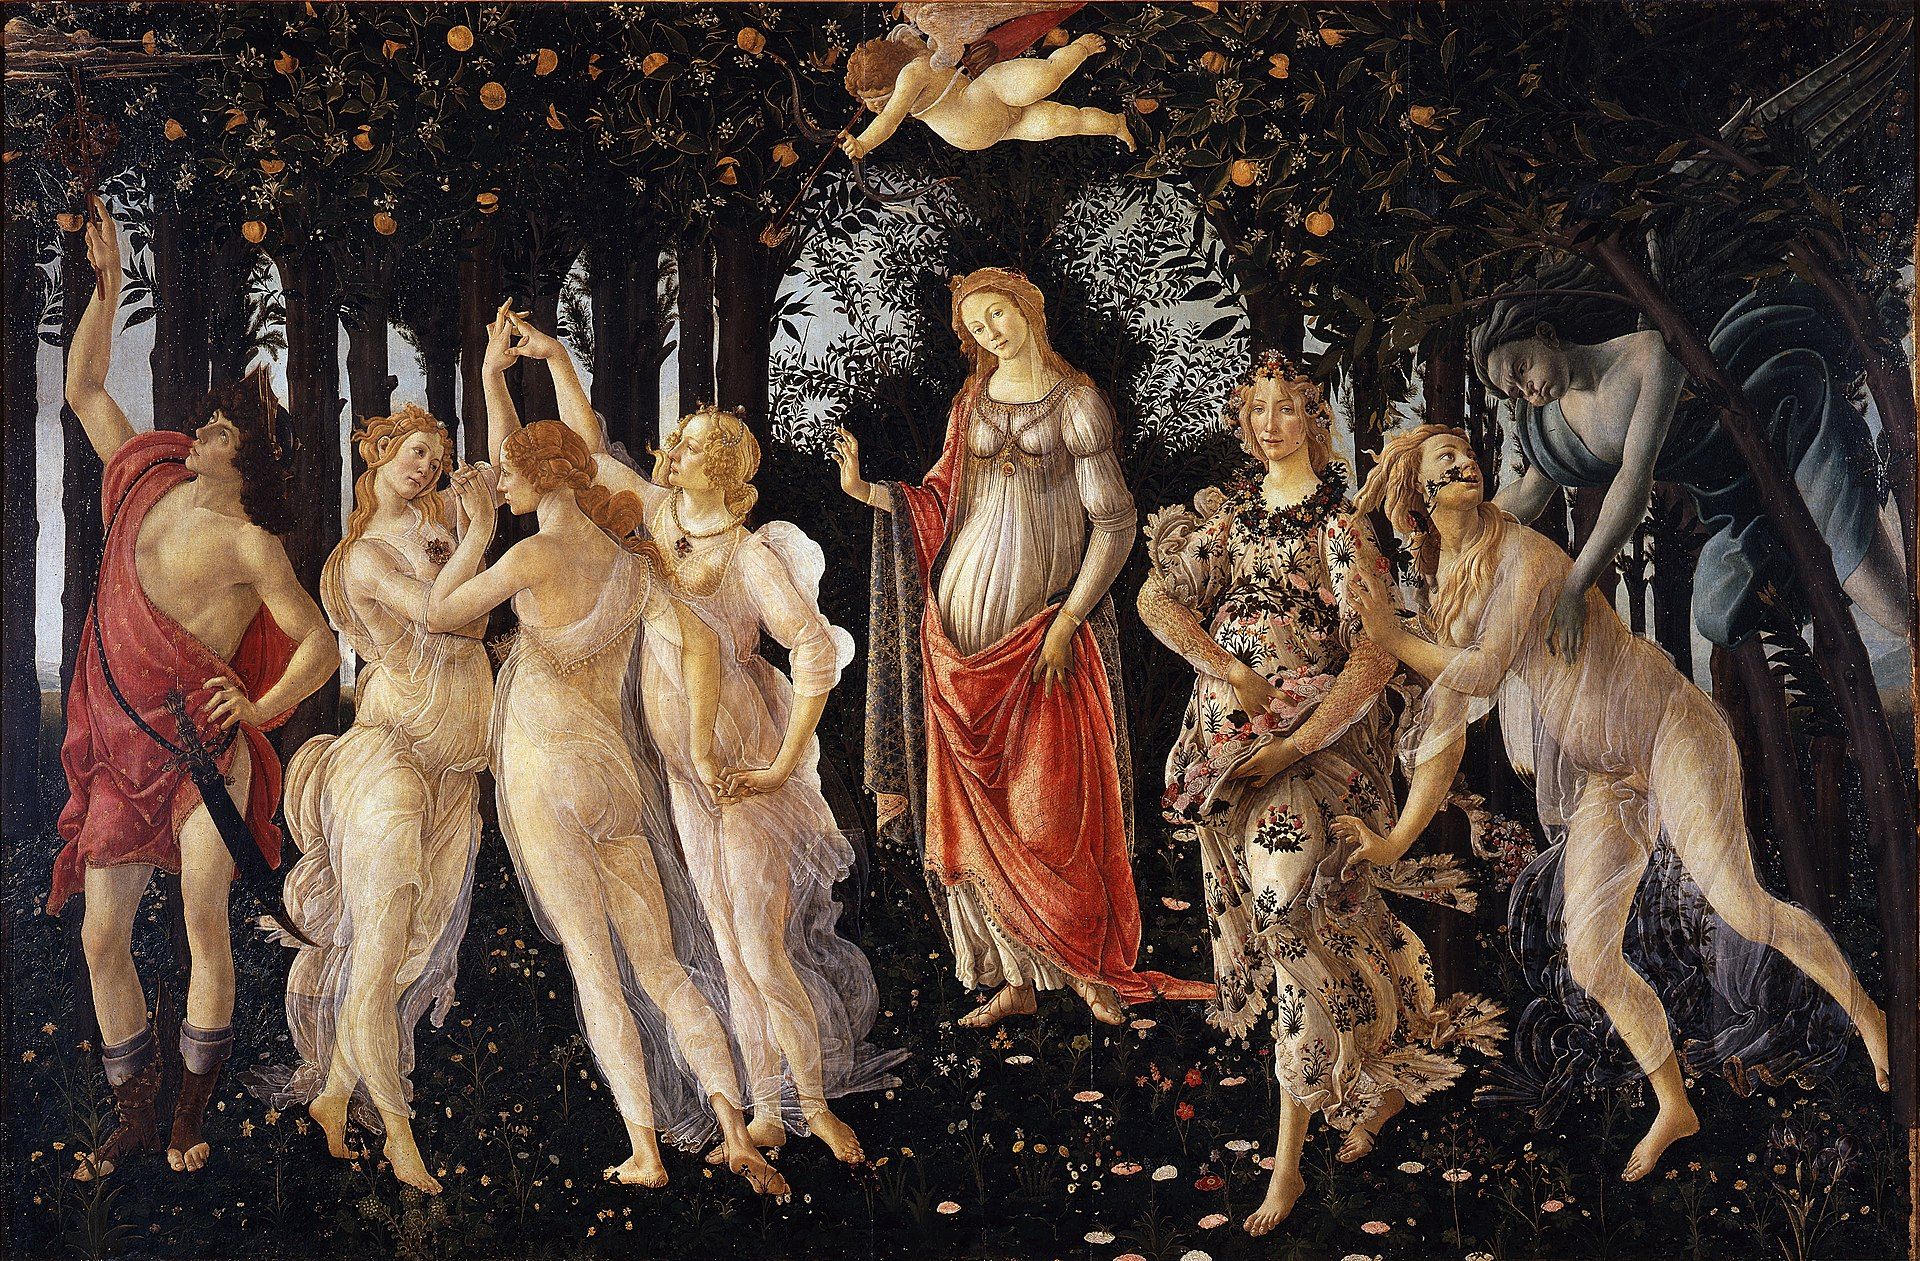 Botticelli's La Primavera (late 1470s or early 1480s)